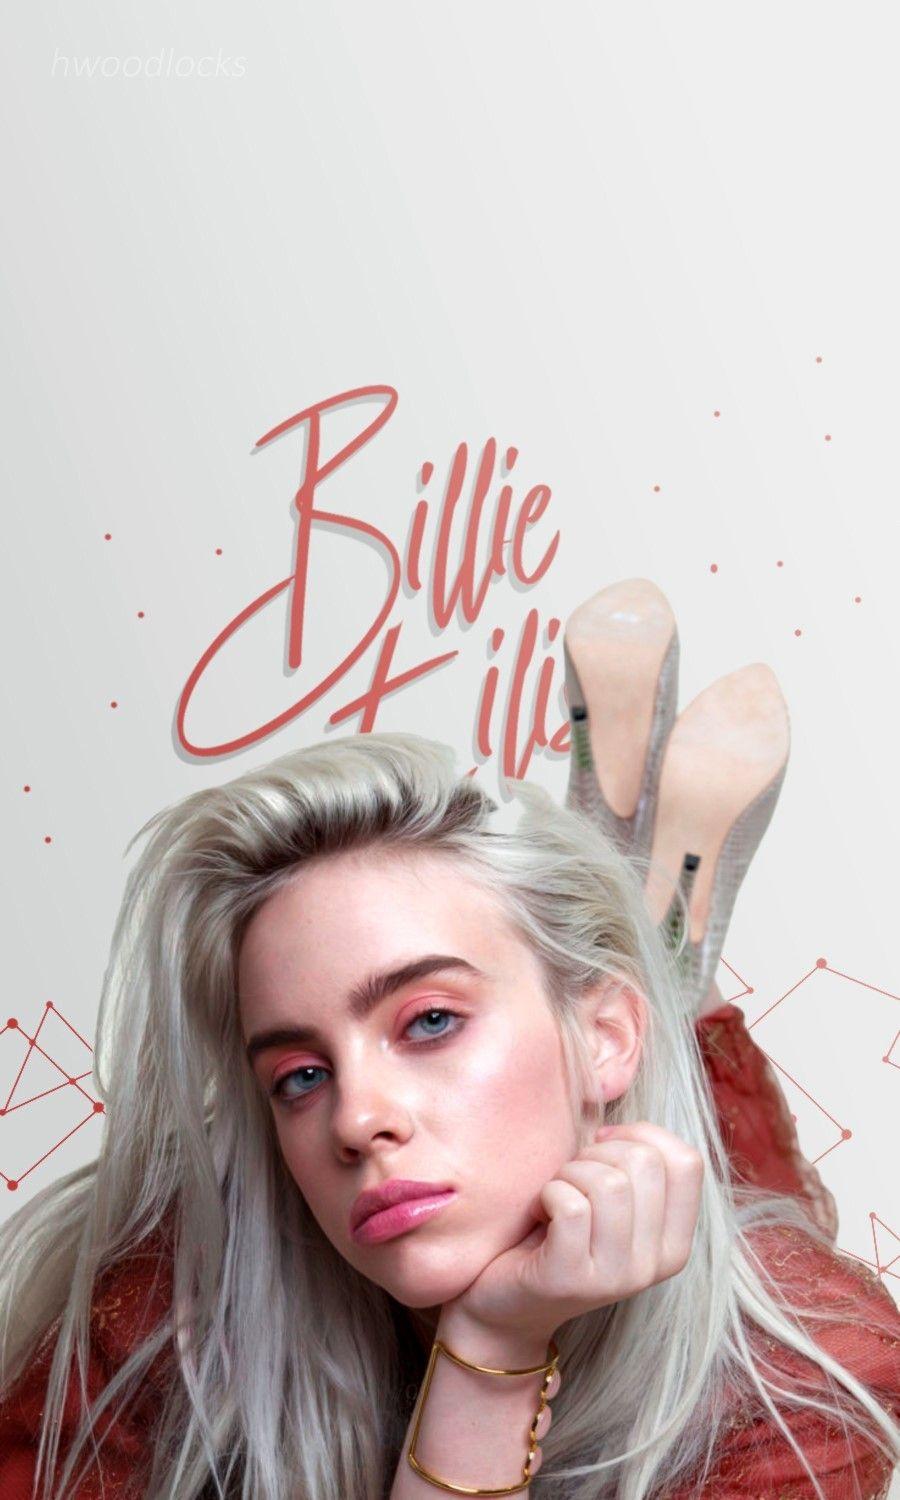 Billie eilish sexy pictures